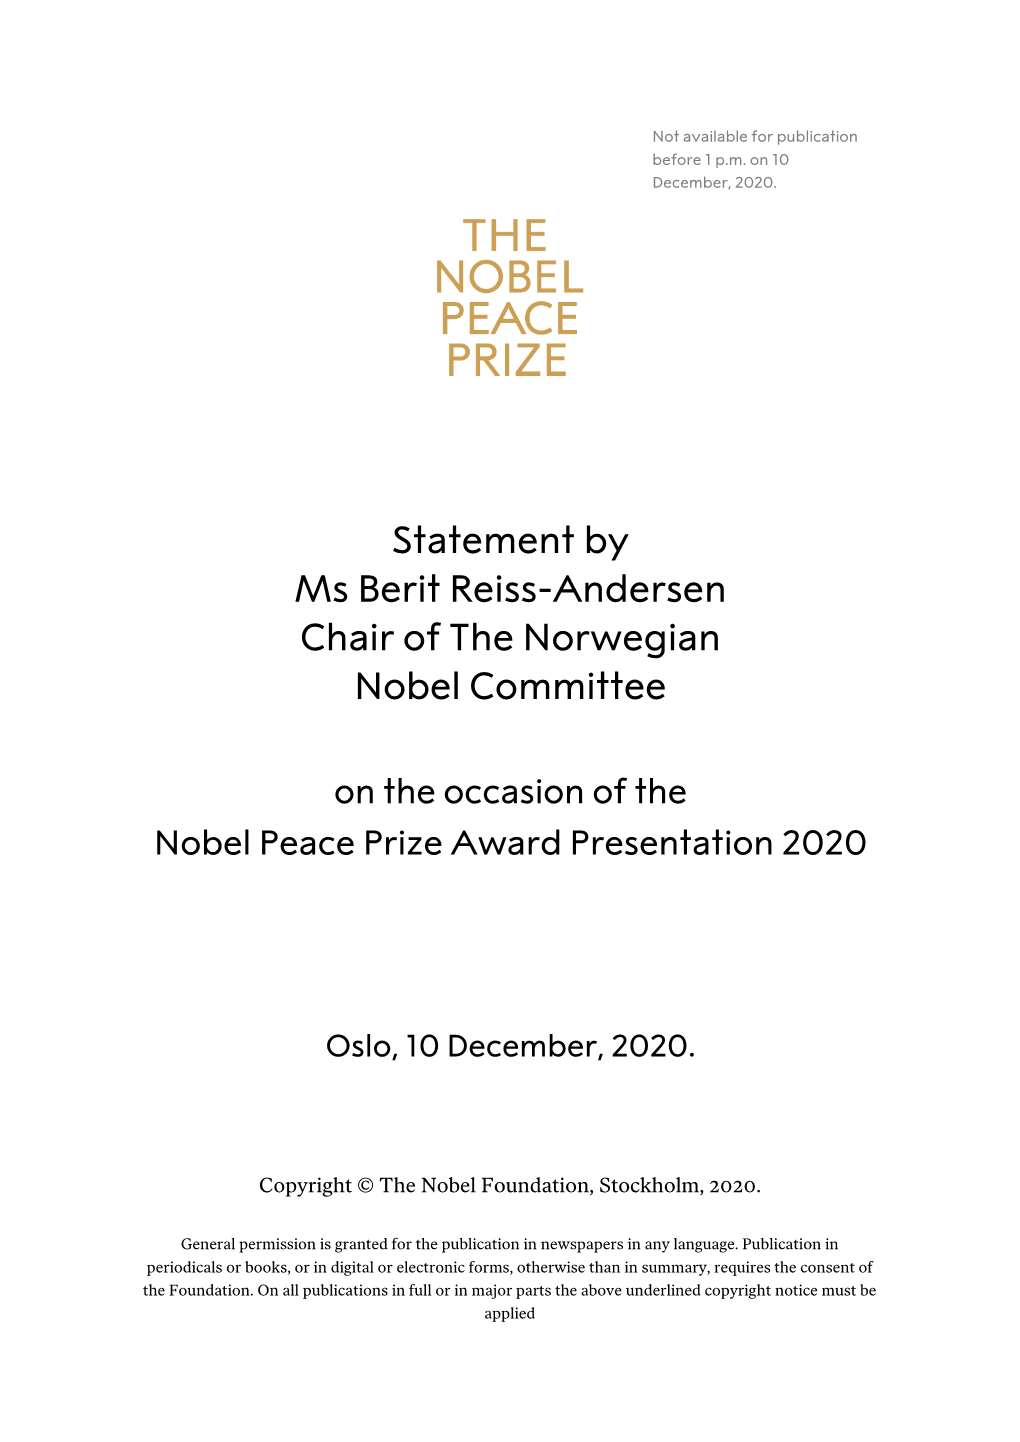 Statement by Ms Berit Reiss-Andersen Chair of the Norwegian Nobel Committee